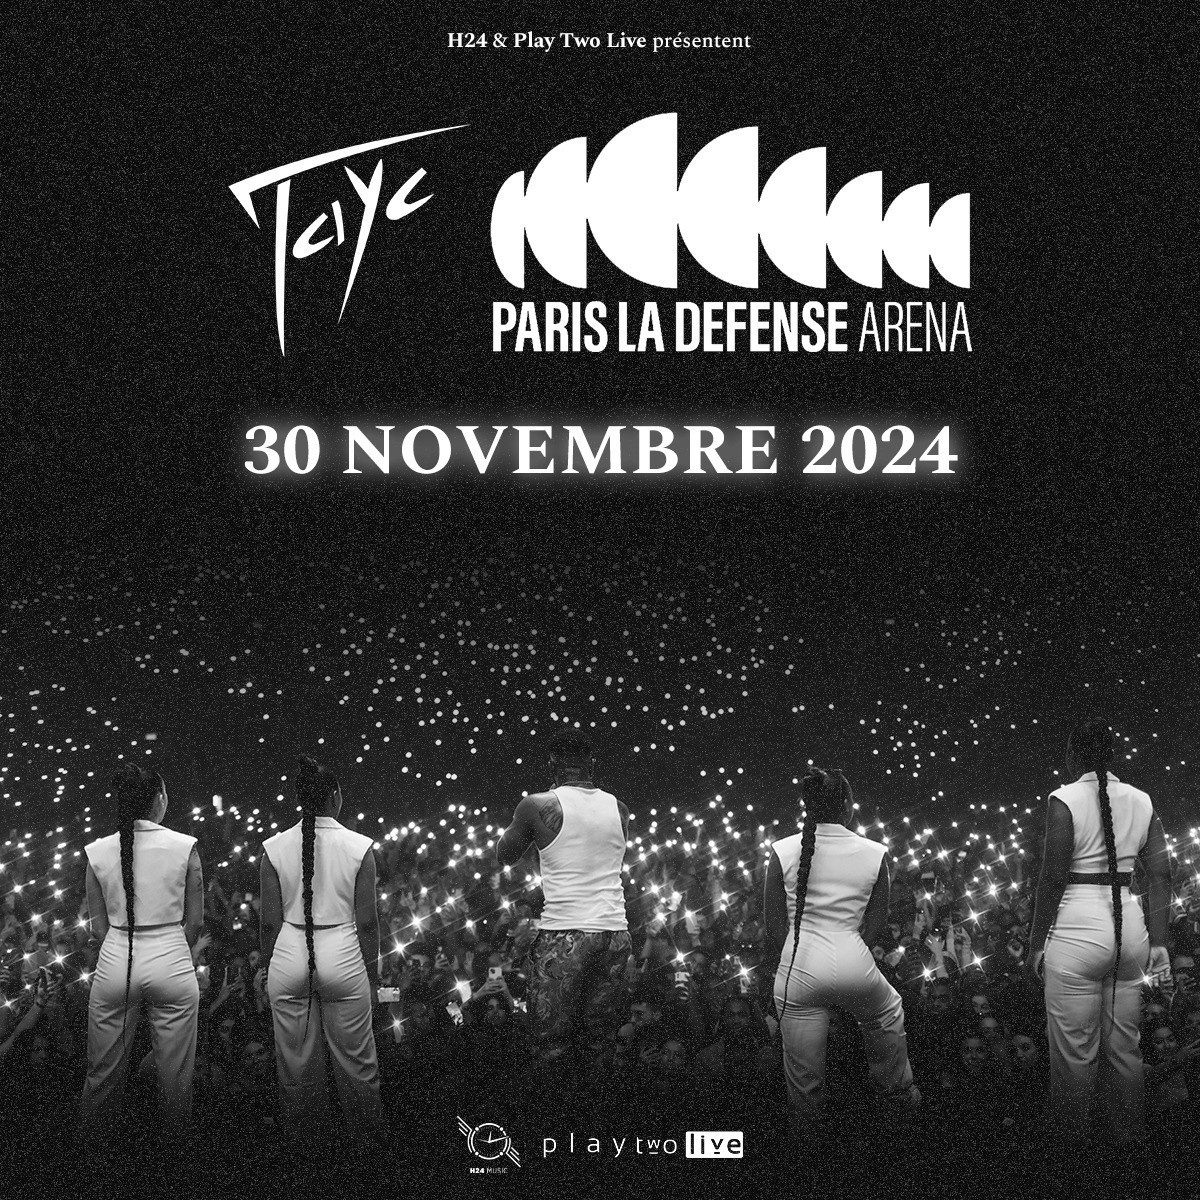 Tayc于2024年11月在巴黎拉德芳斯体育馆举行音乐会